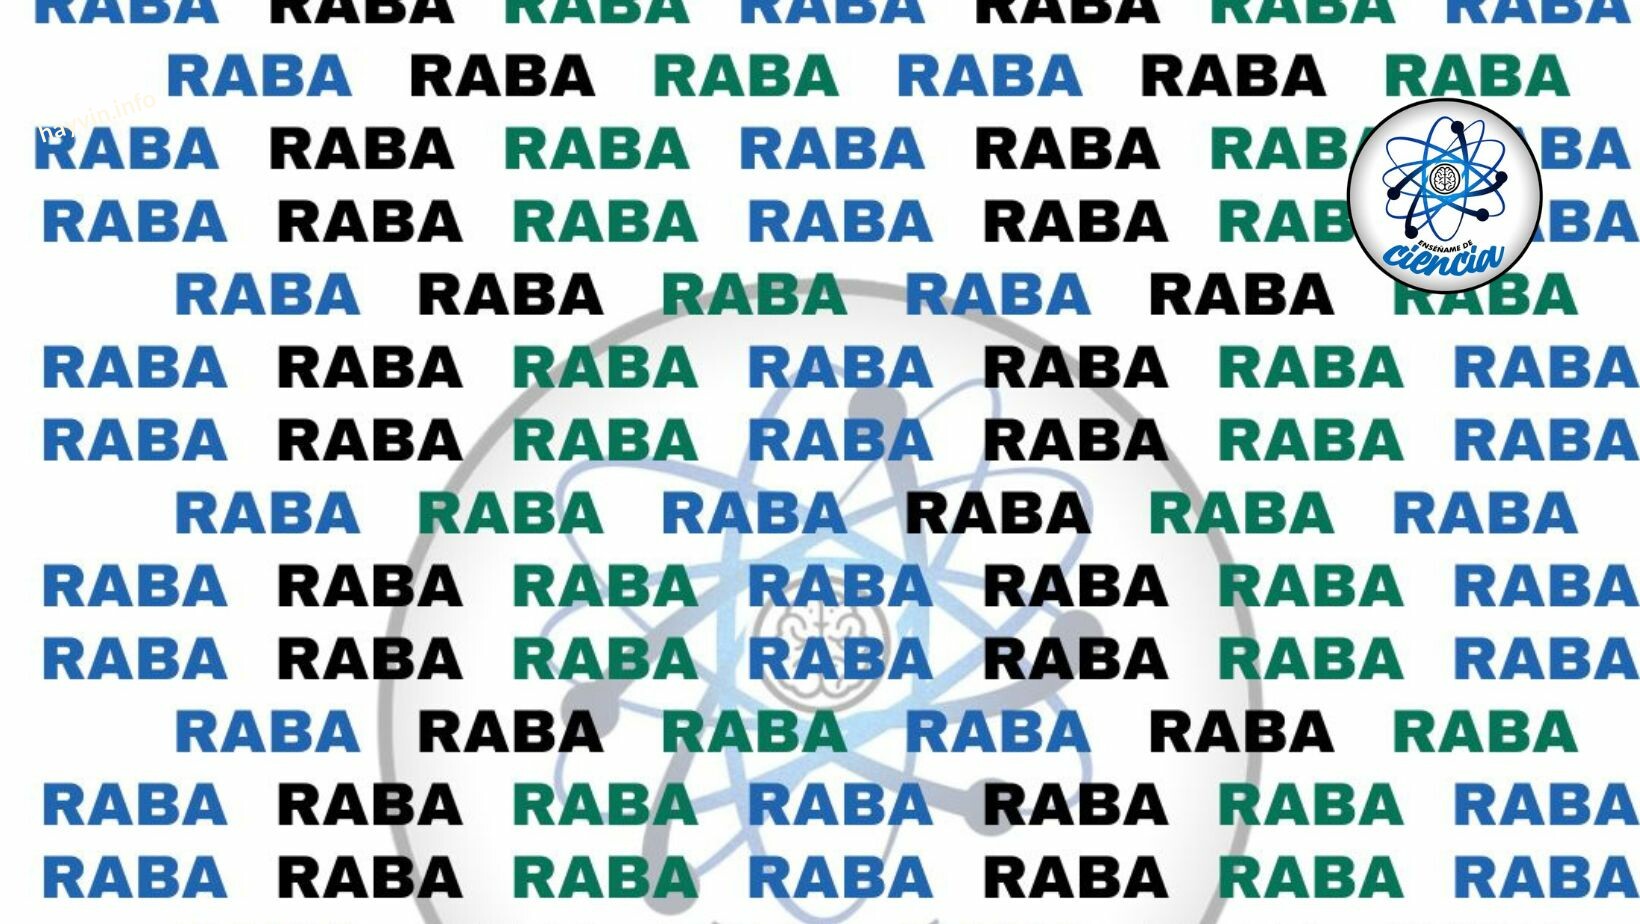 Teszt: Megtalálod a szót KÜLÖNBÖZIK RABA-tól a TREND vizuális rejtvényében?